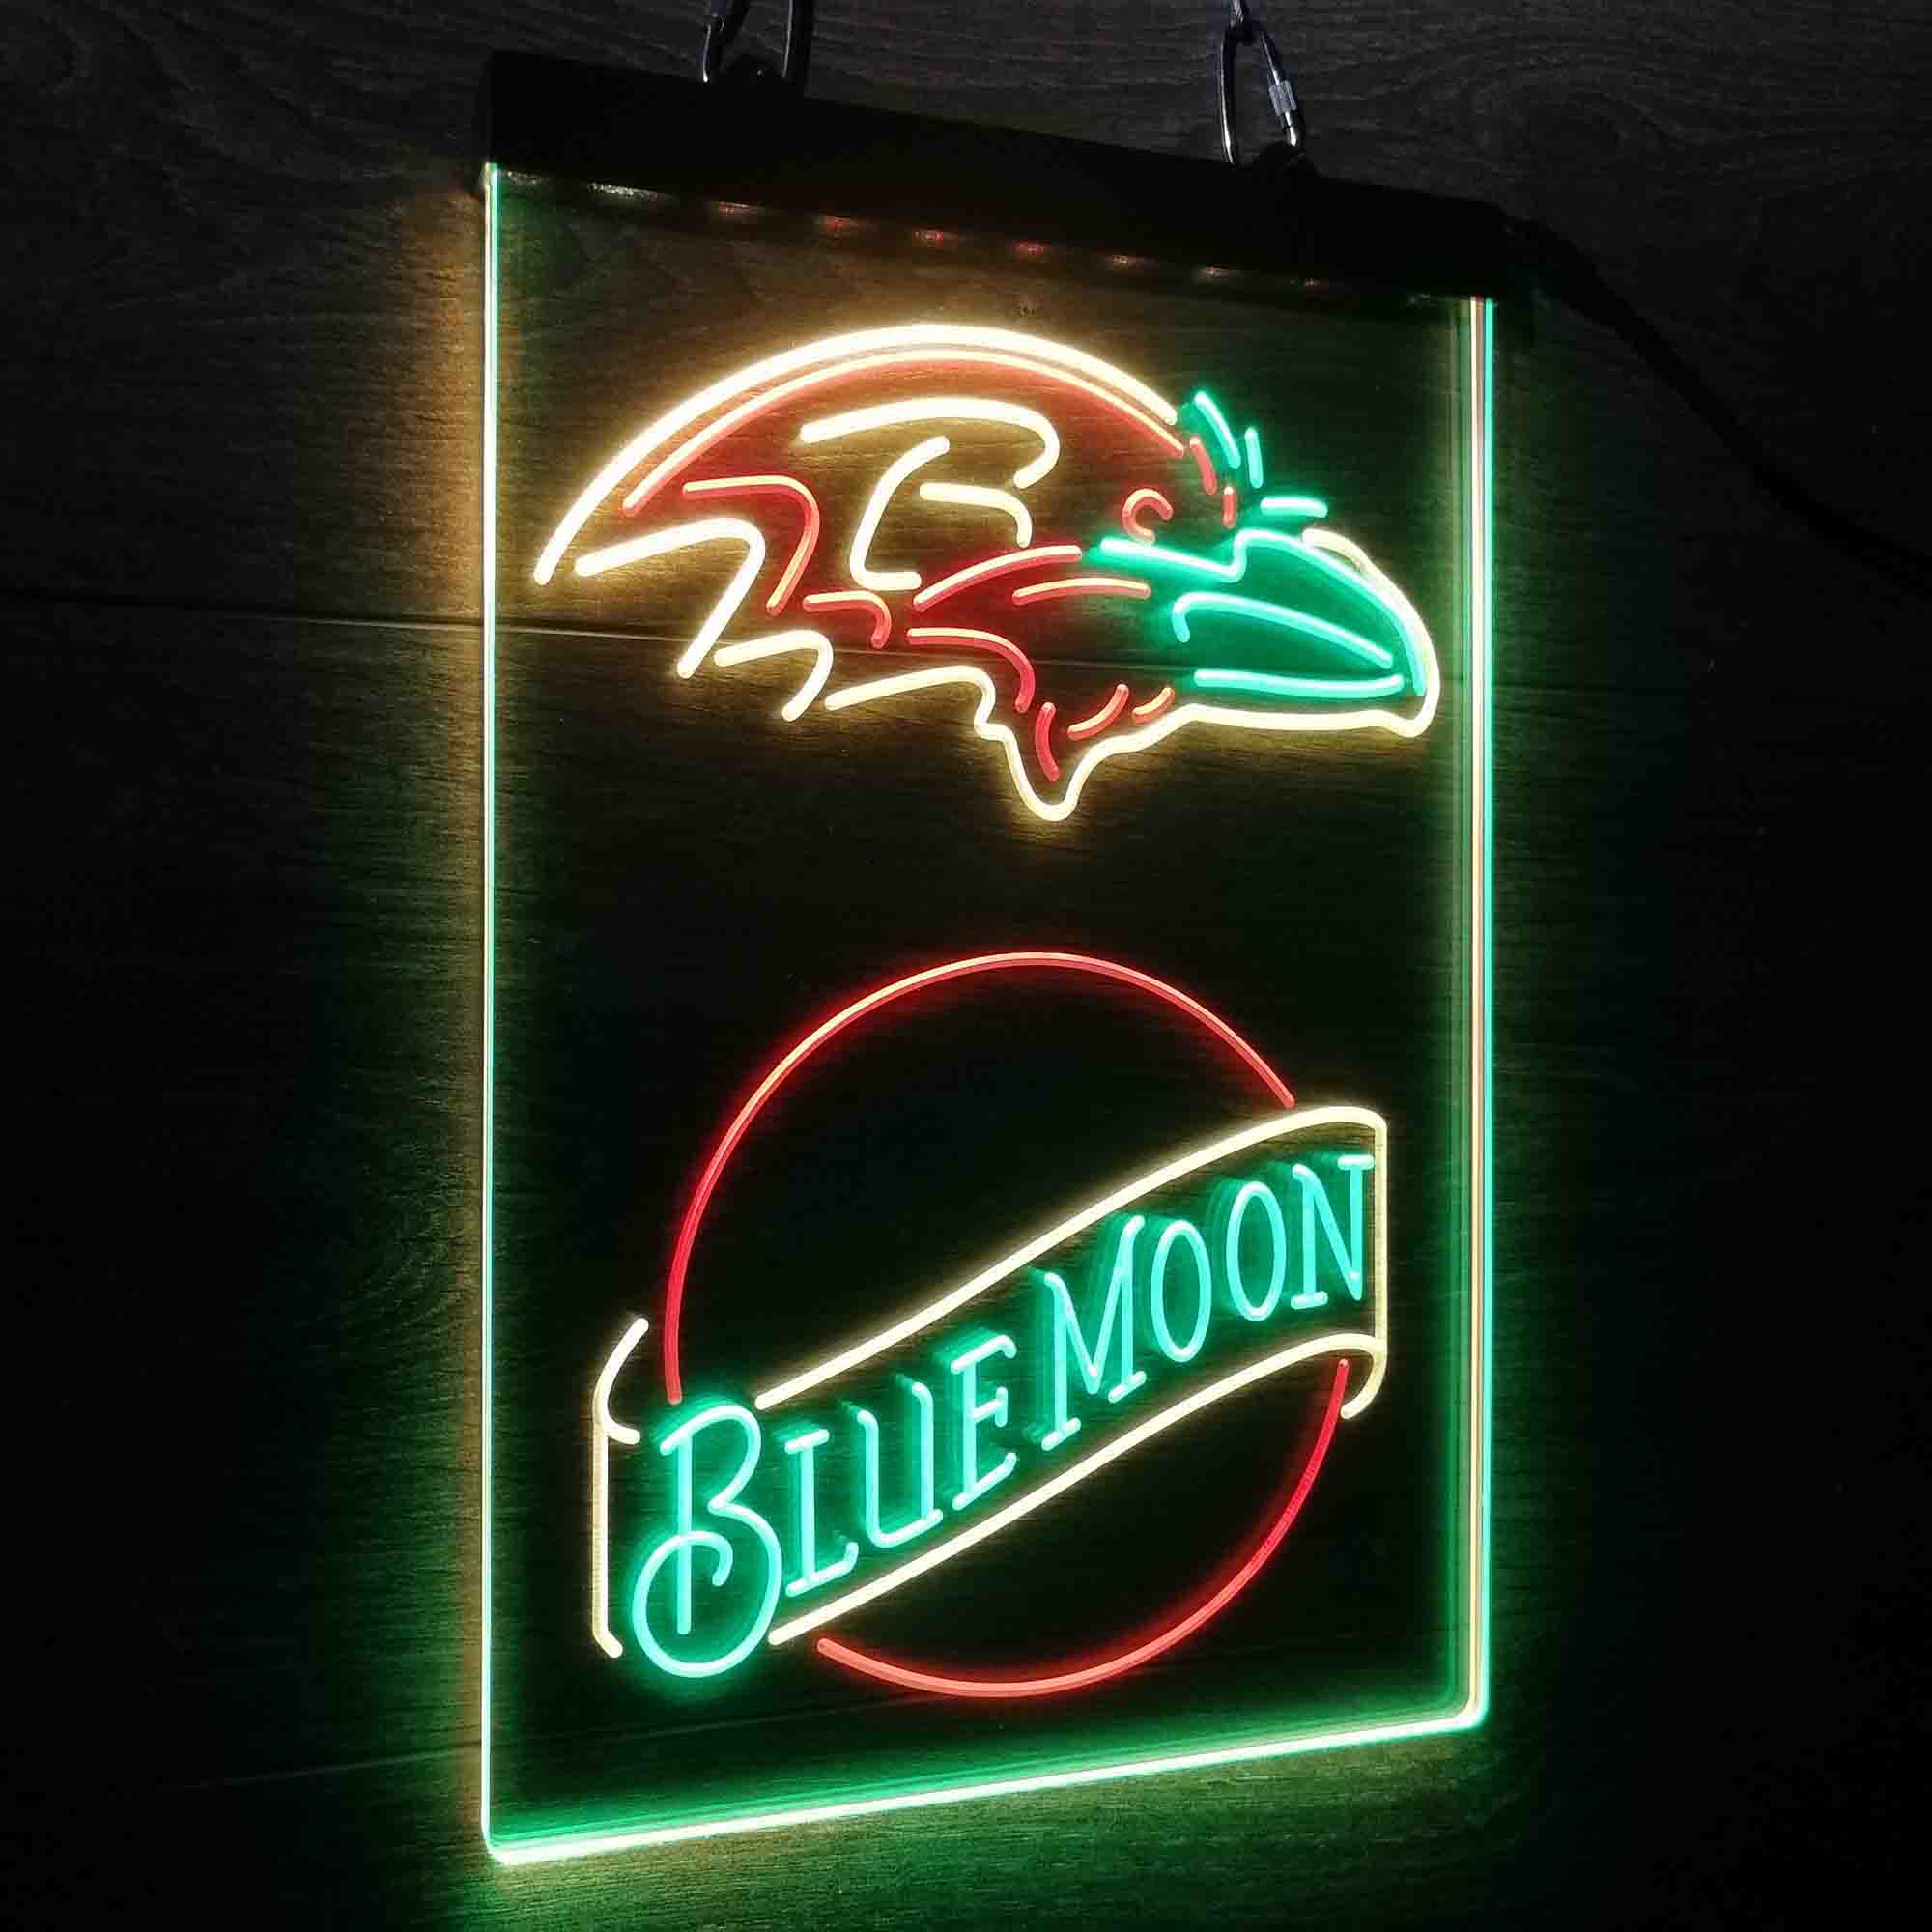 Blue Moon Bar Baltimore Ravens Est. 1996 Neon LED Sign 3 Colors